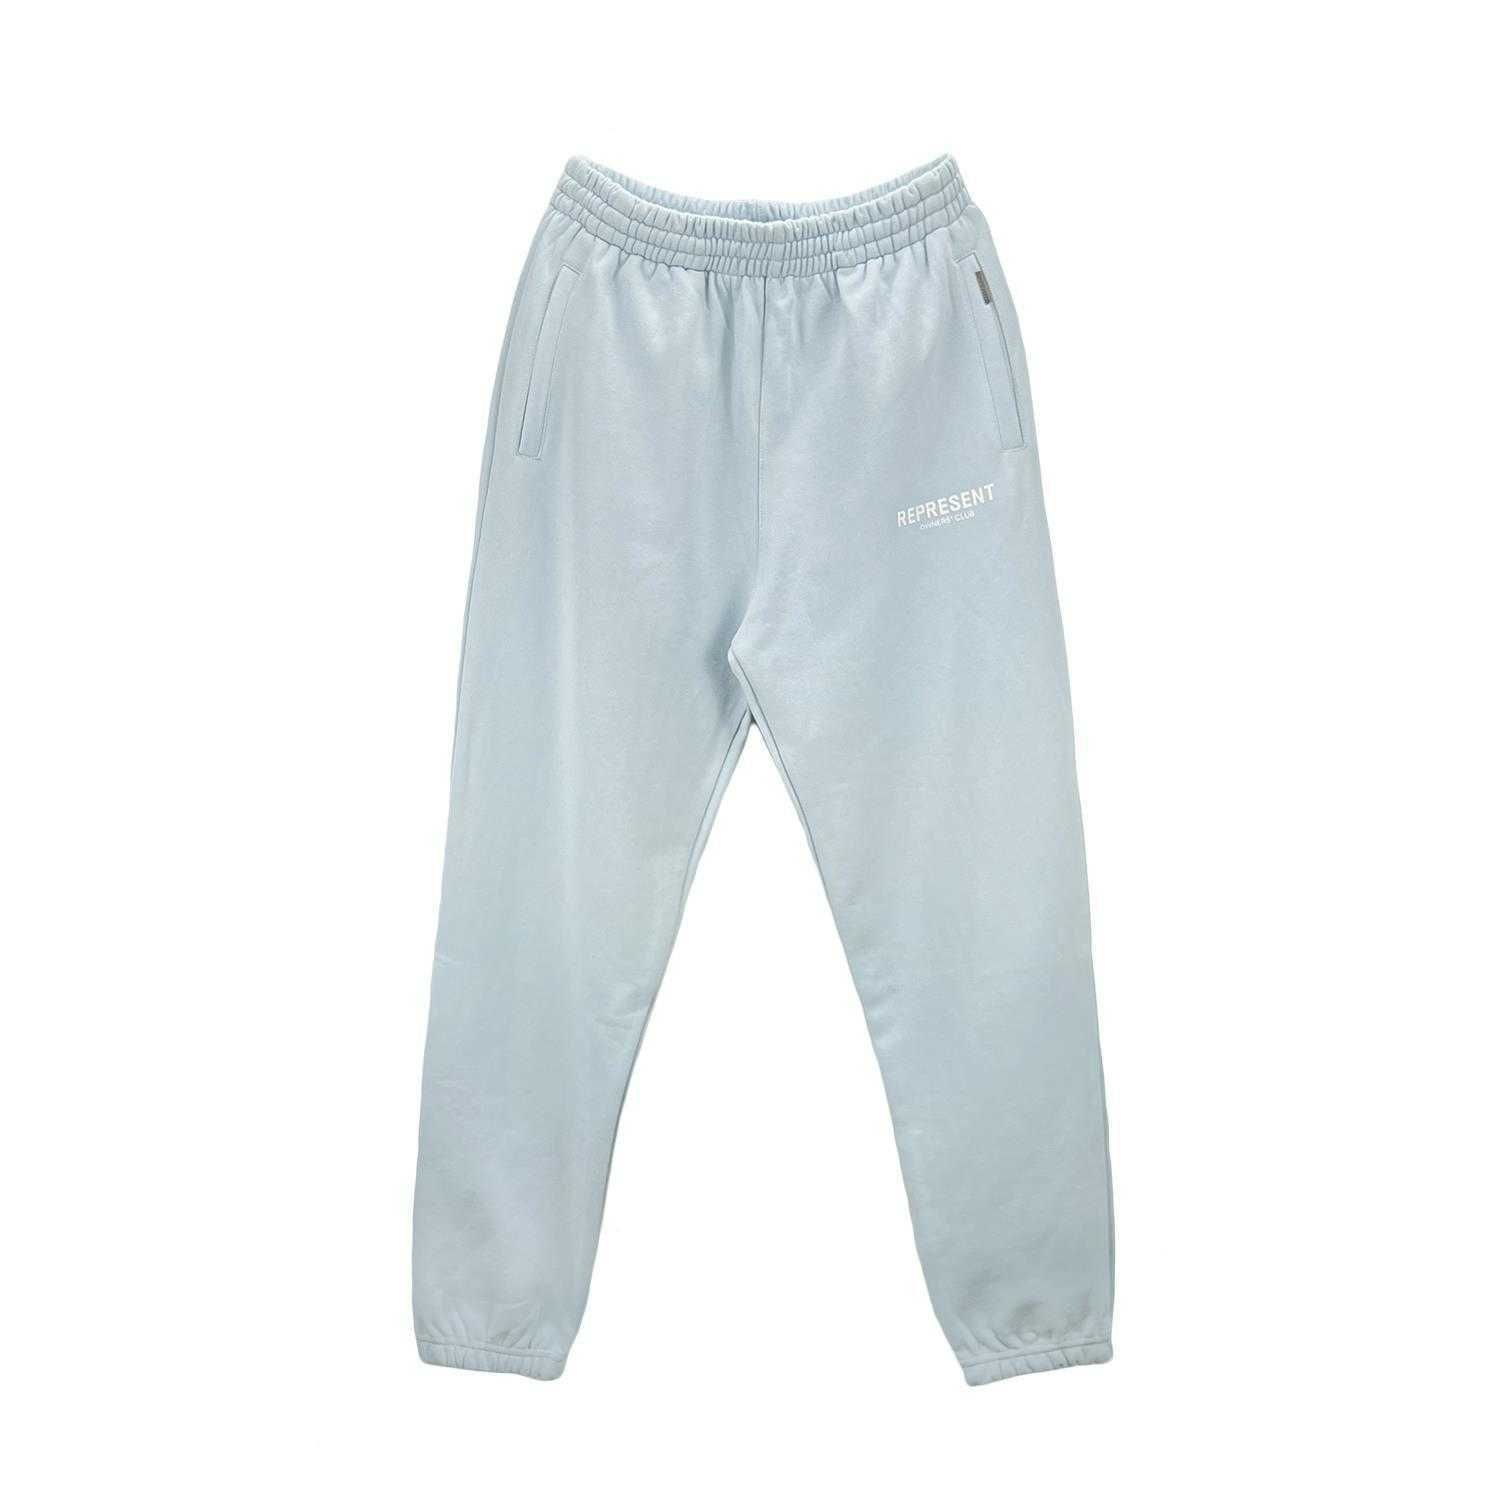 light blue pants cotton